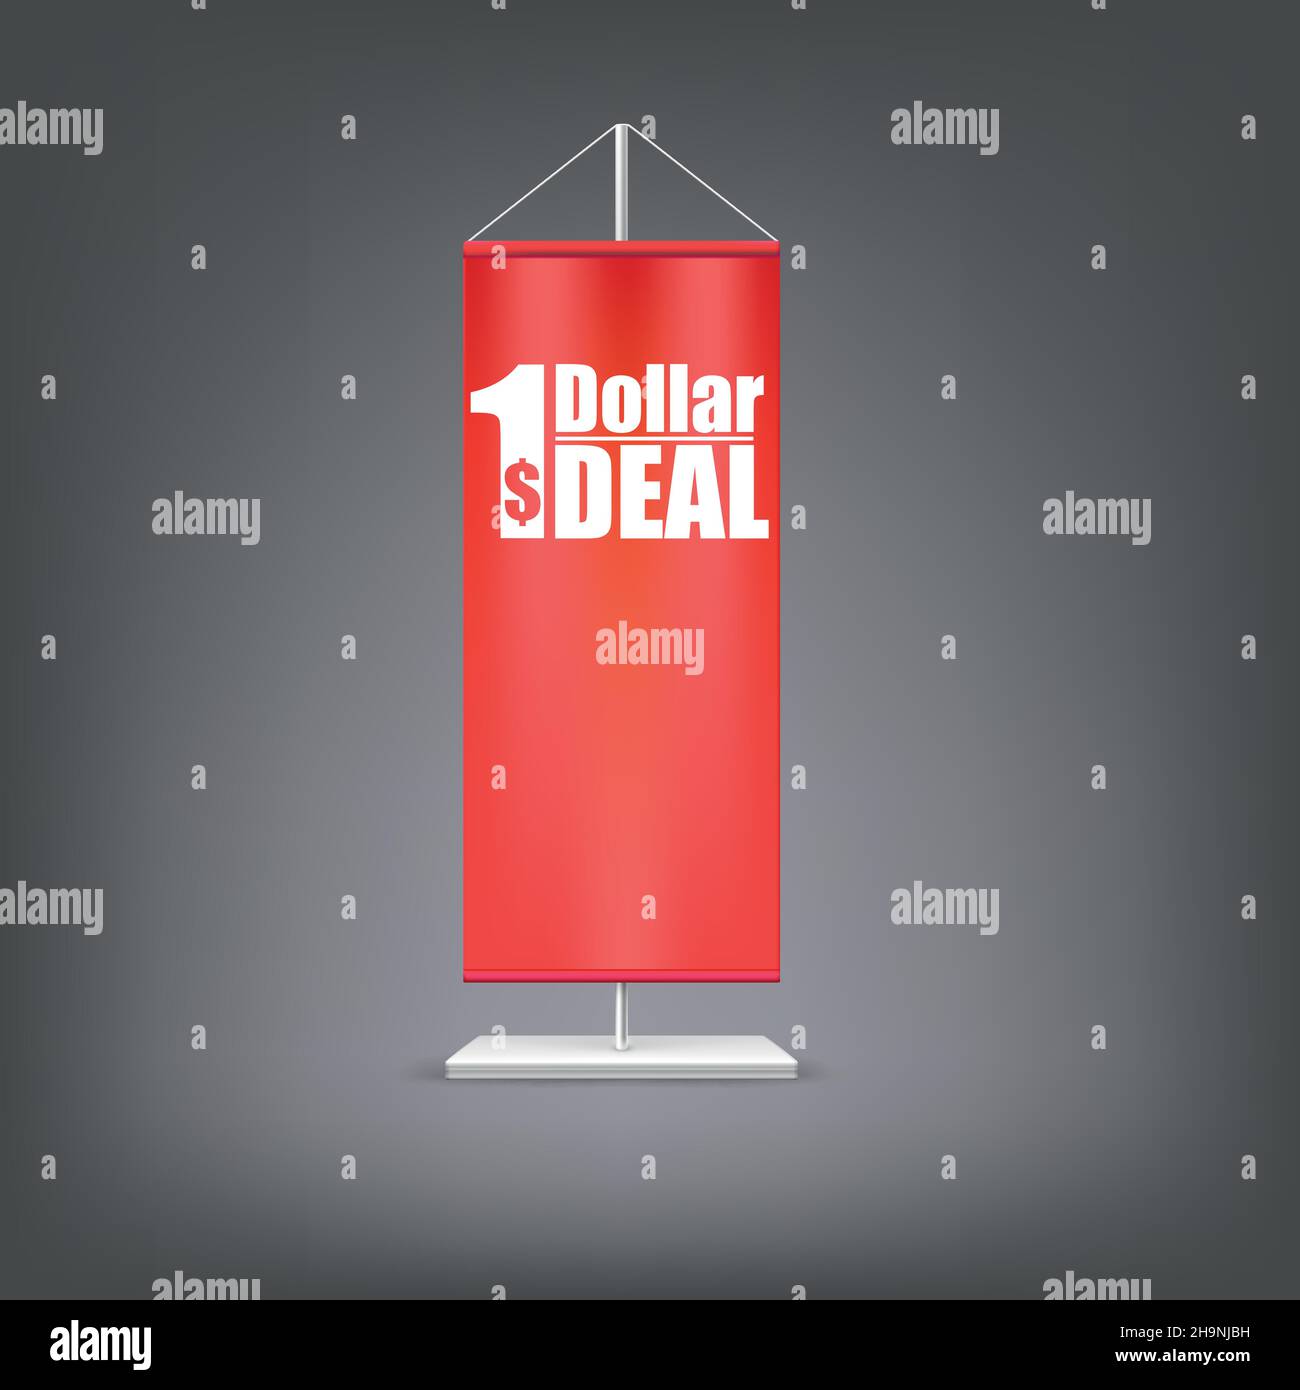 Affare del dollaro. Bandiera rossa verticale sul montante. Illustrazione Vettoriale